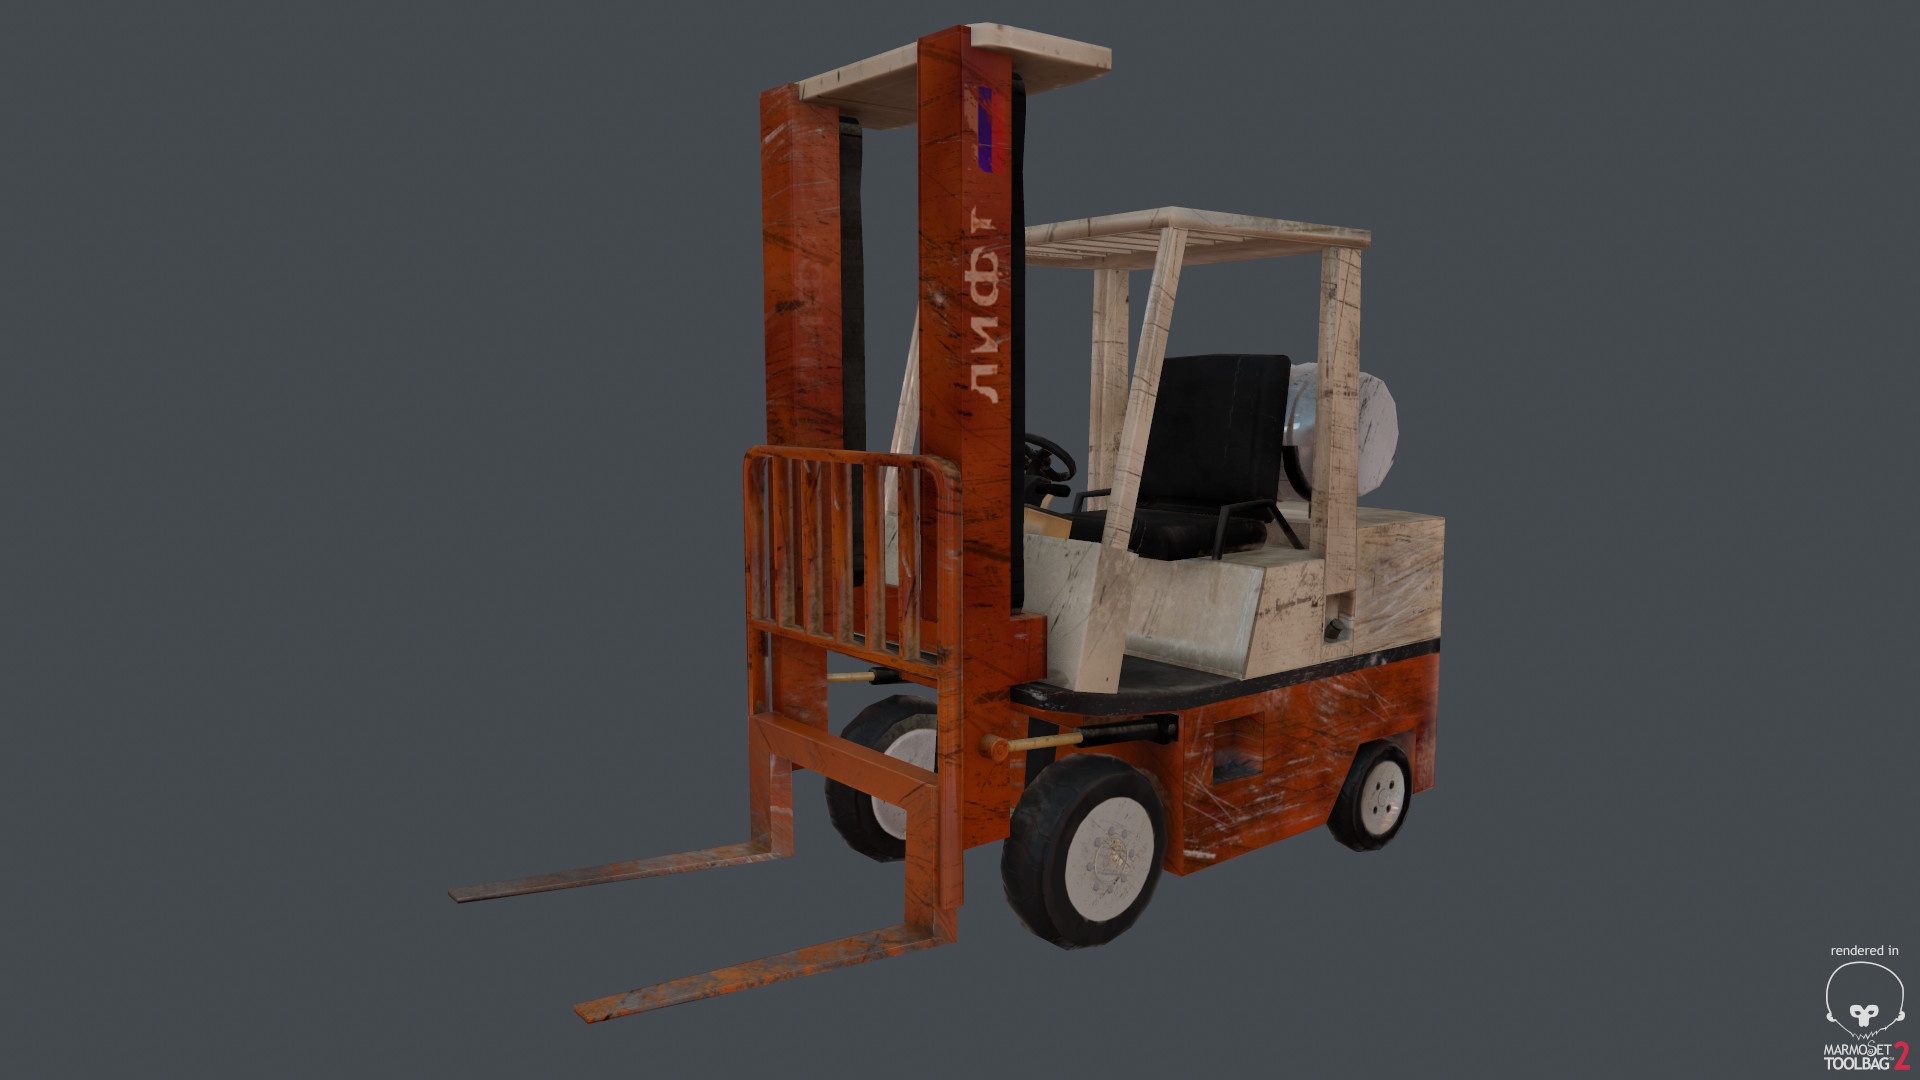 ArtStation - PBR Forklift